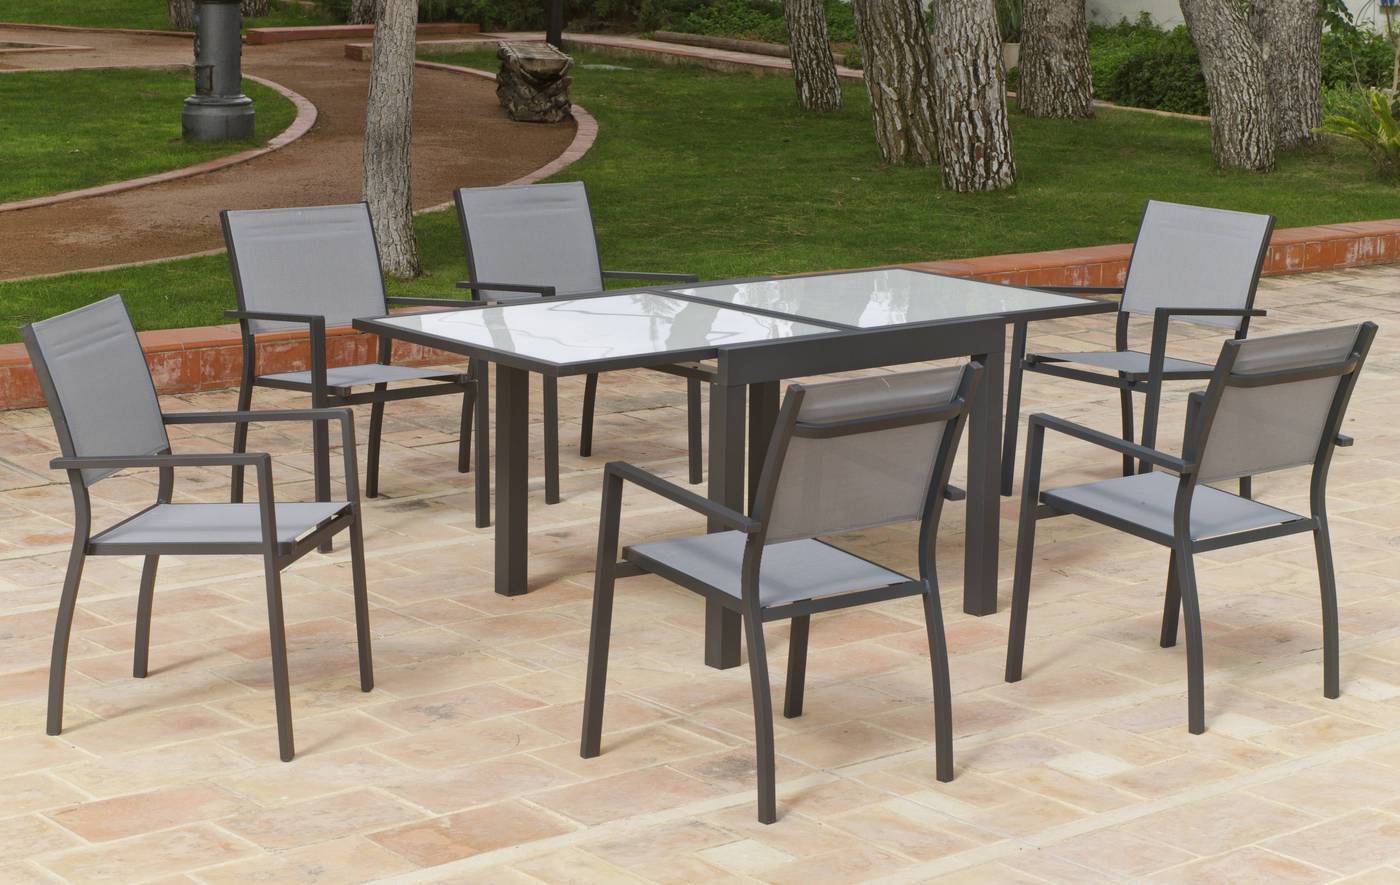 Conjunto de aluminio color antracita: mesa extensible 90-180 cm. + 4 sillones apilables de alumino y textilen